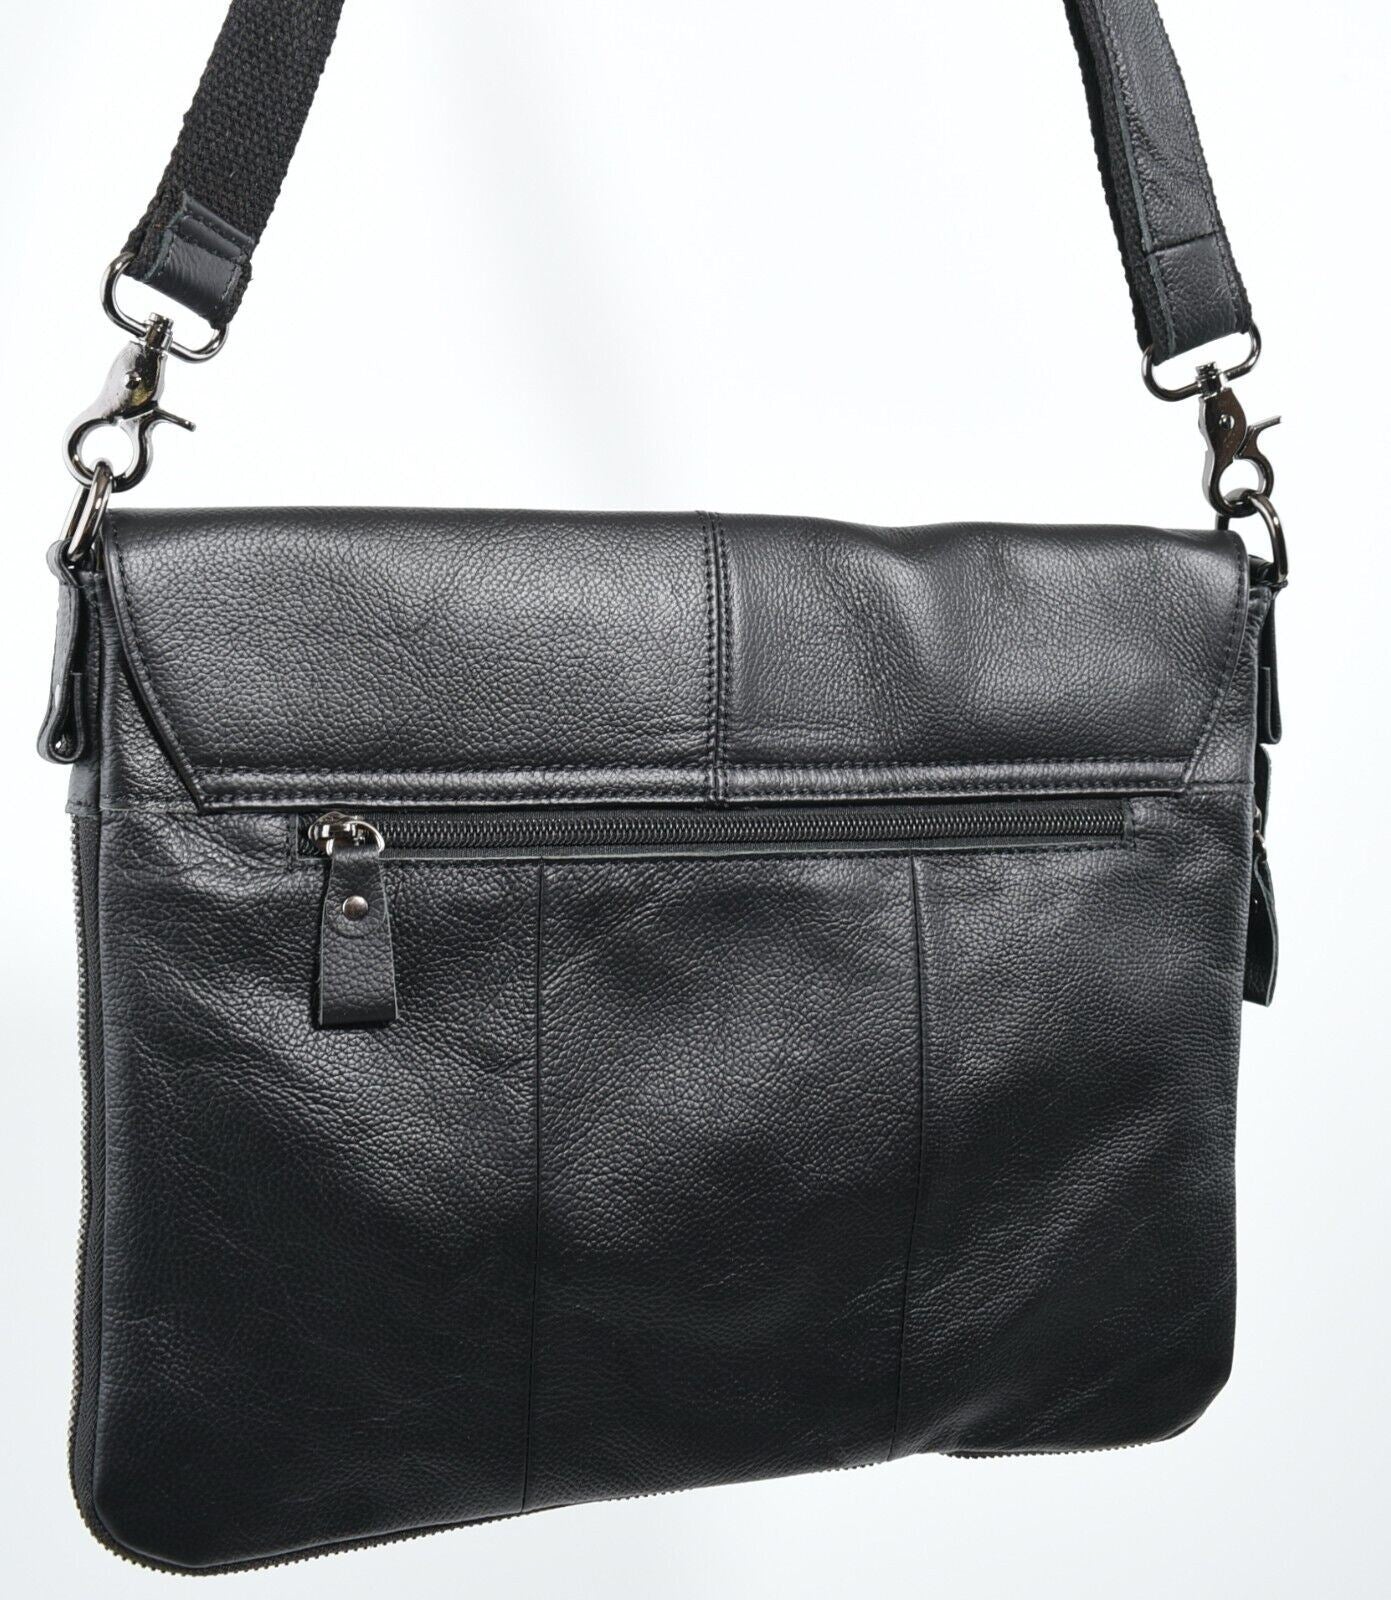 Genuine Cowhide Leather Messenger Bag /Crossbody /Shoulder Bag, Black